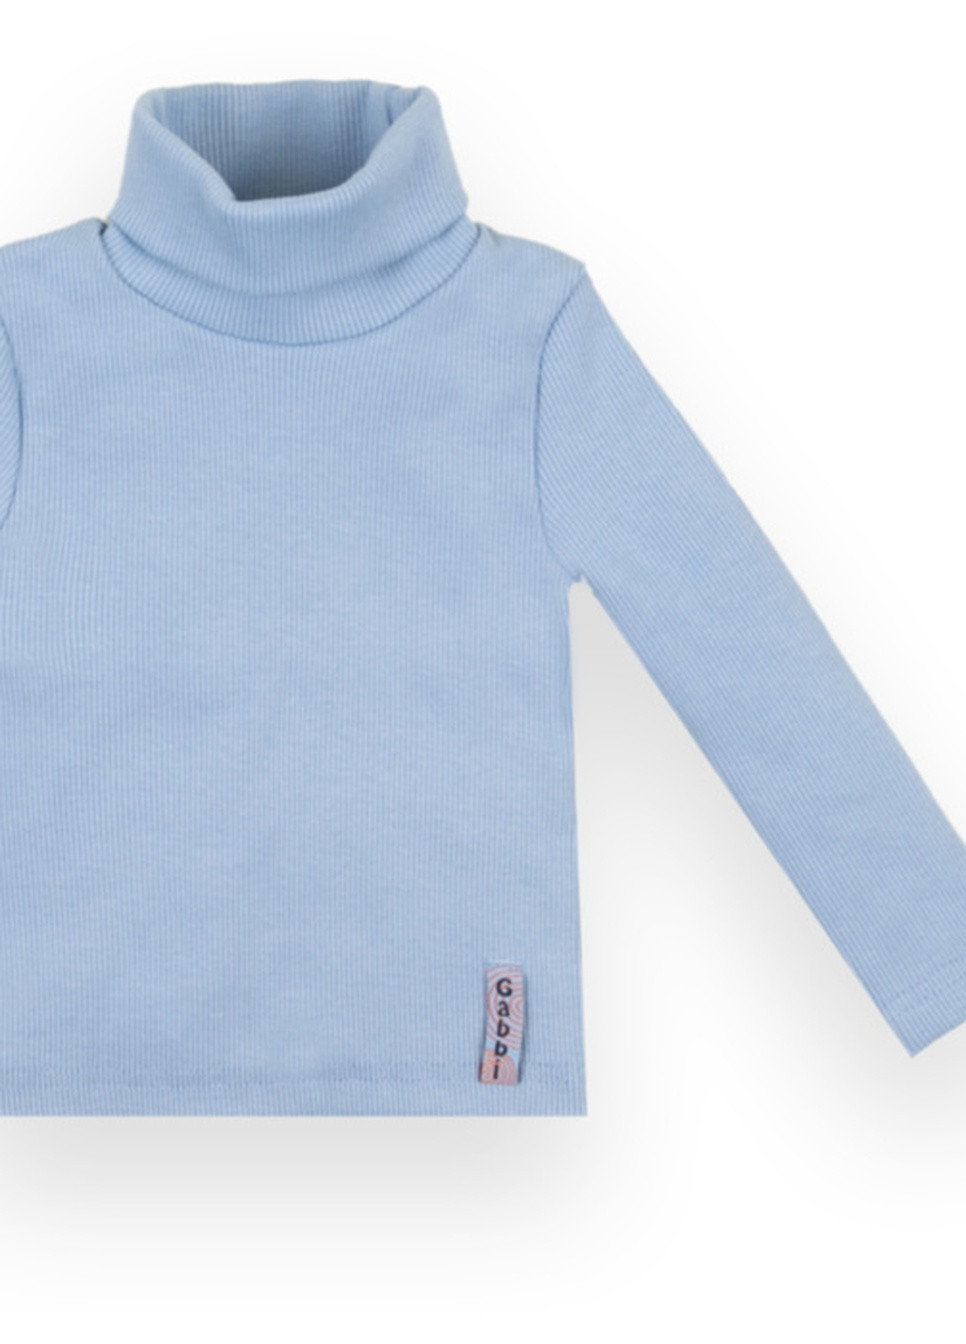 Светло-голубой демисезонный детский свитер sv-21-10-1 *стиль* Габби